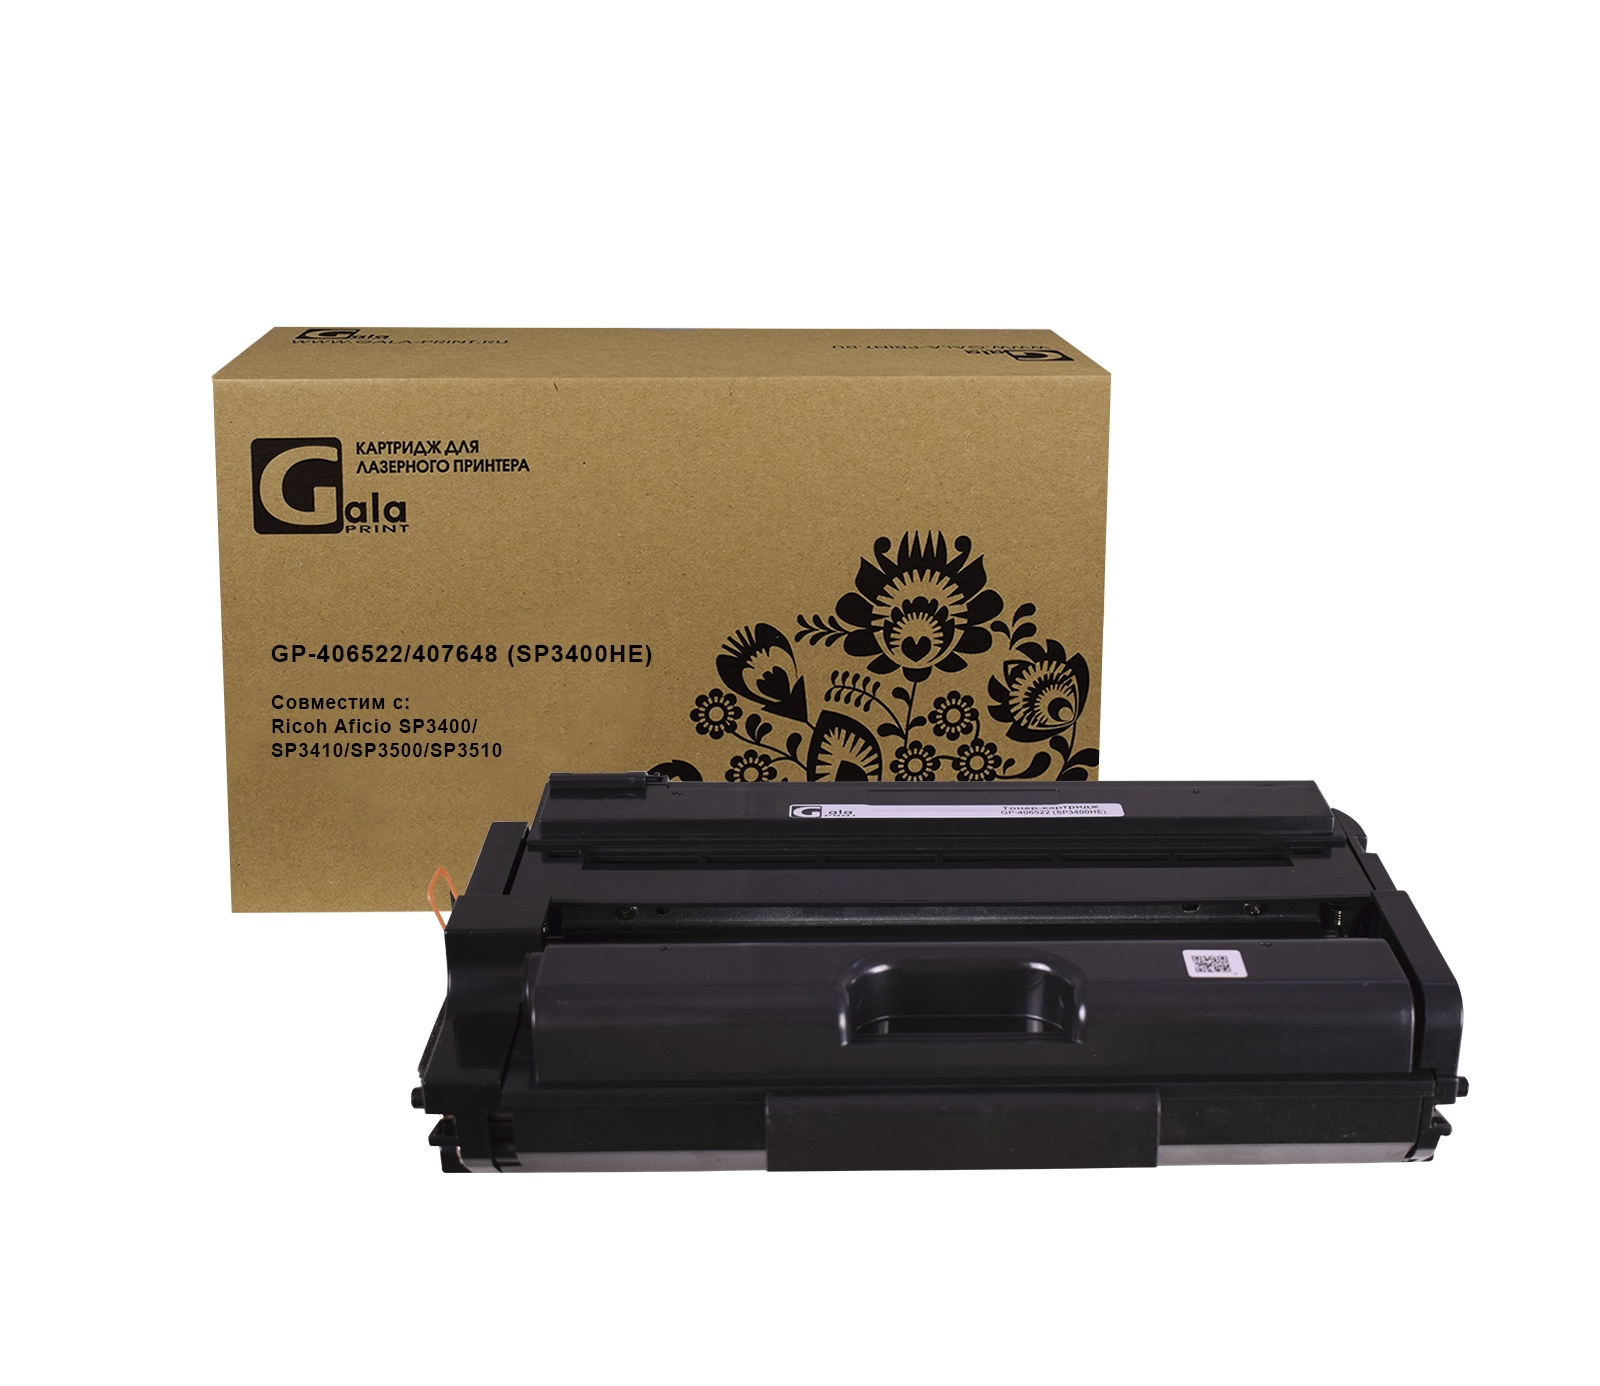 Картридж GP-406522/407648 (SP3400HE) для принтеров Ricoh Aficio SP3400/SP3410/SP3500/SP3510 5000 копий GalaPrint